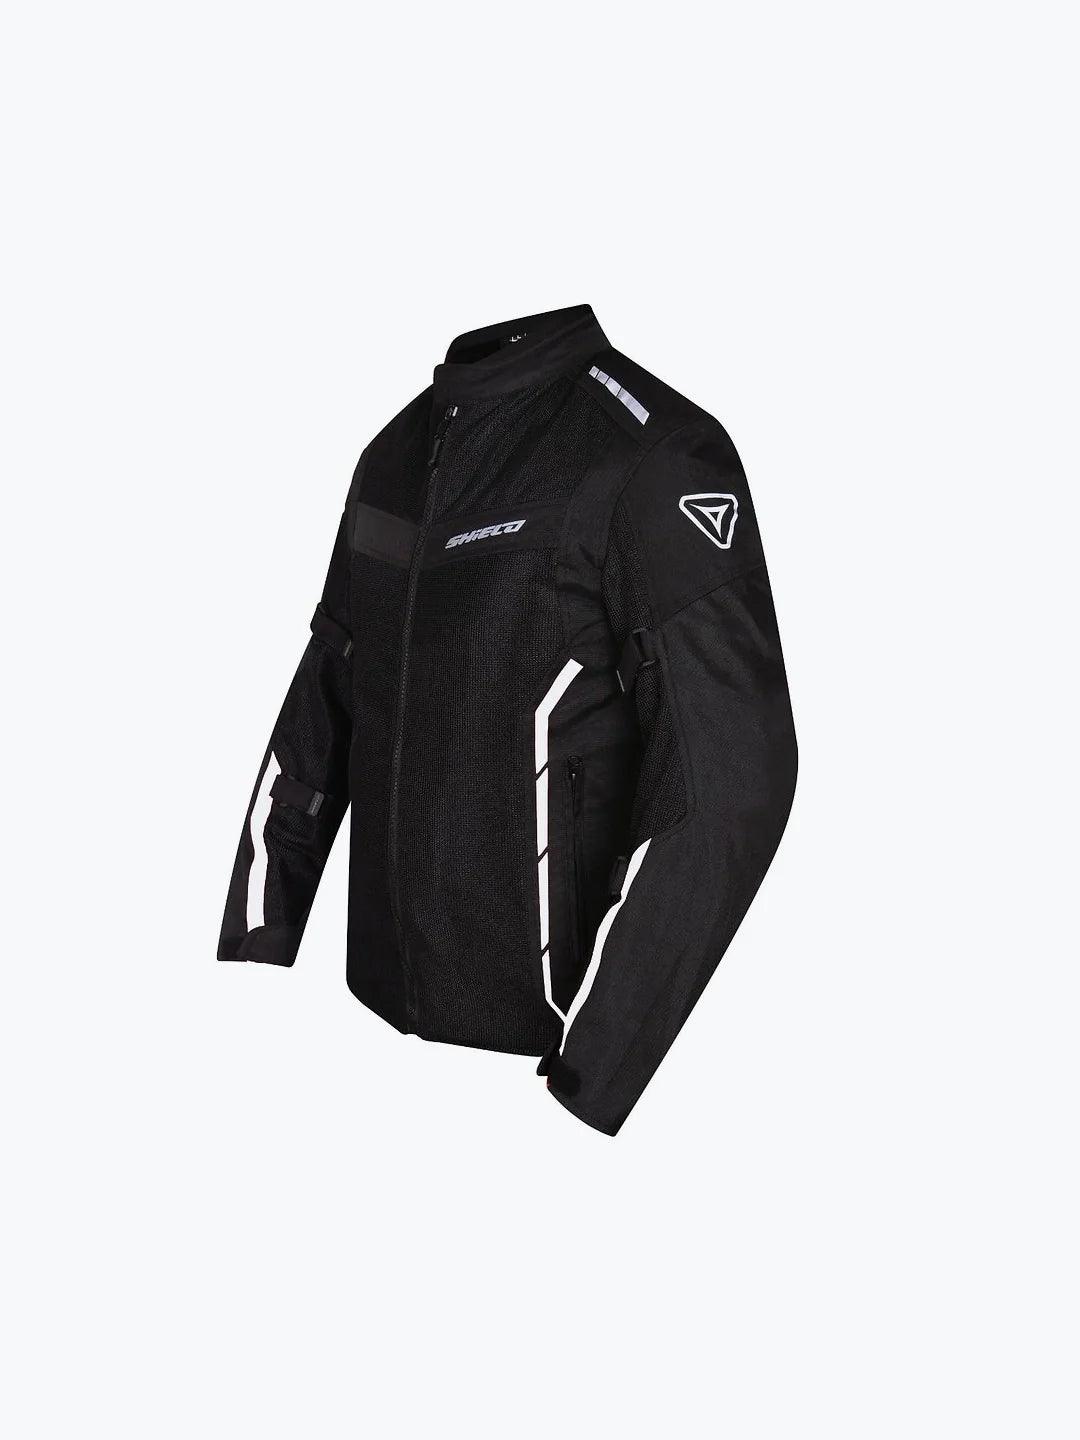 Shield Air GT Jacket Black White - Moto Modz